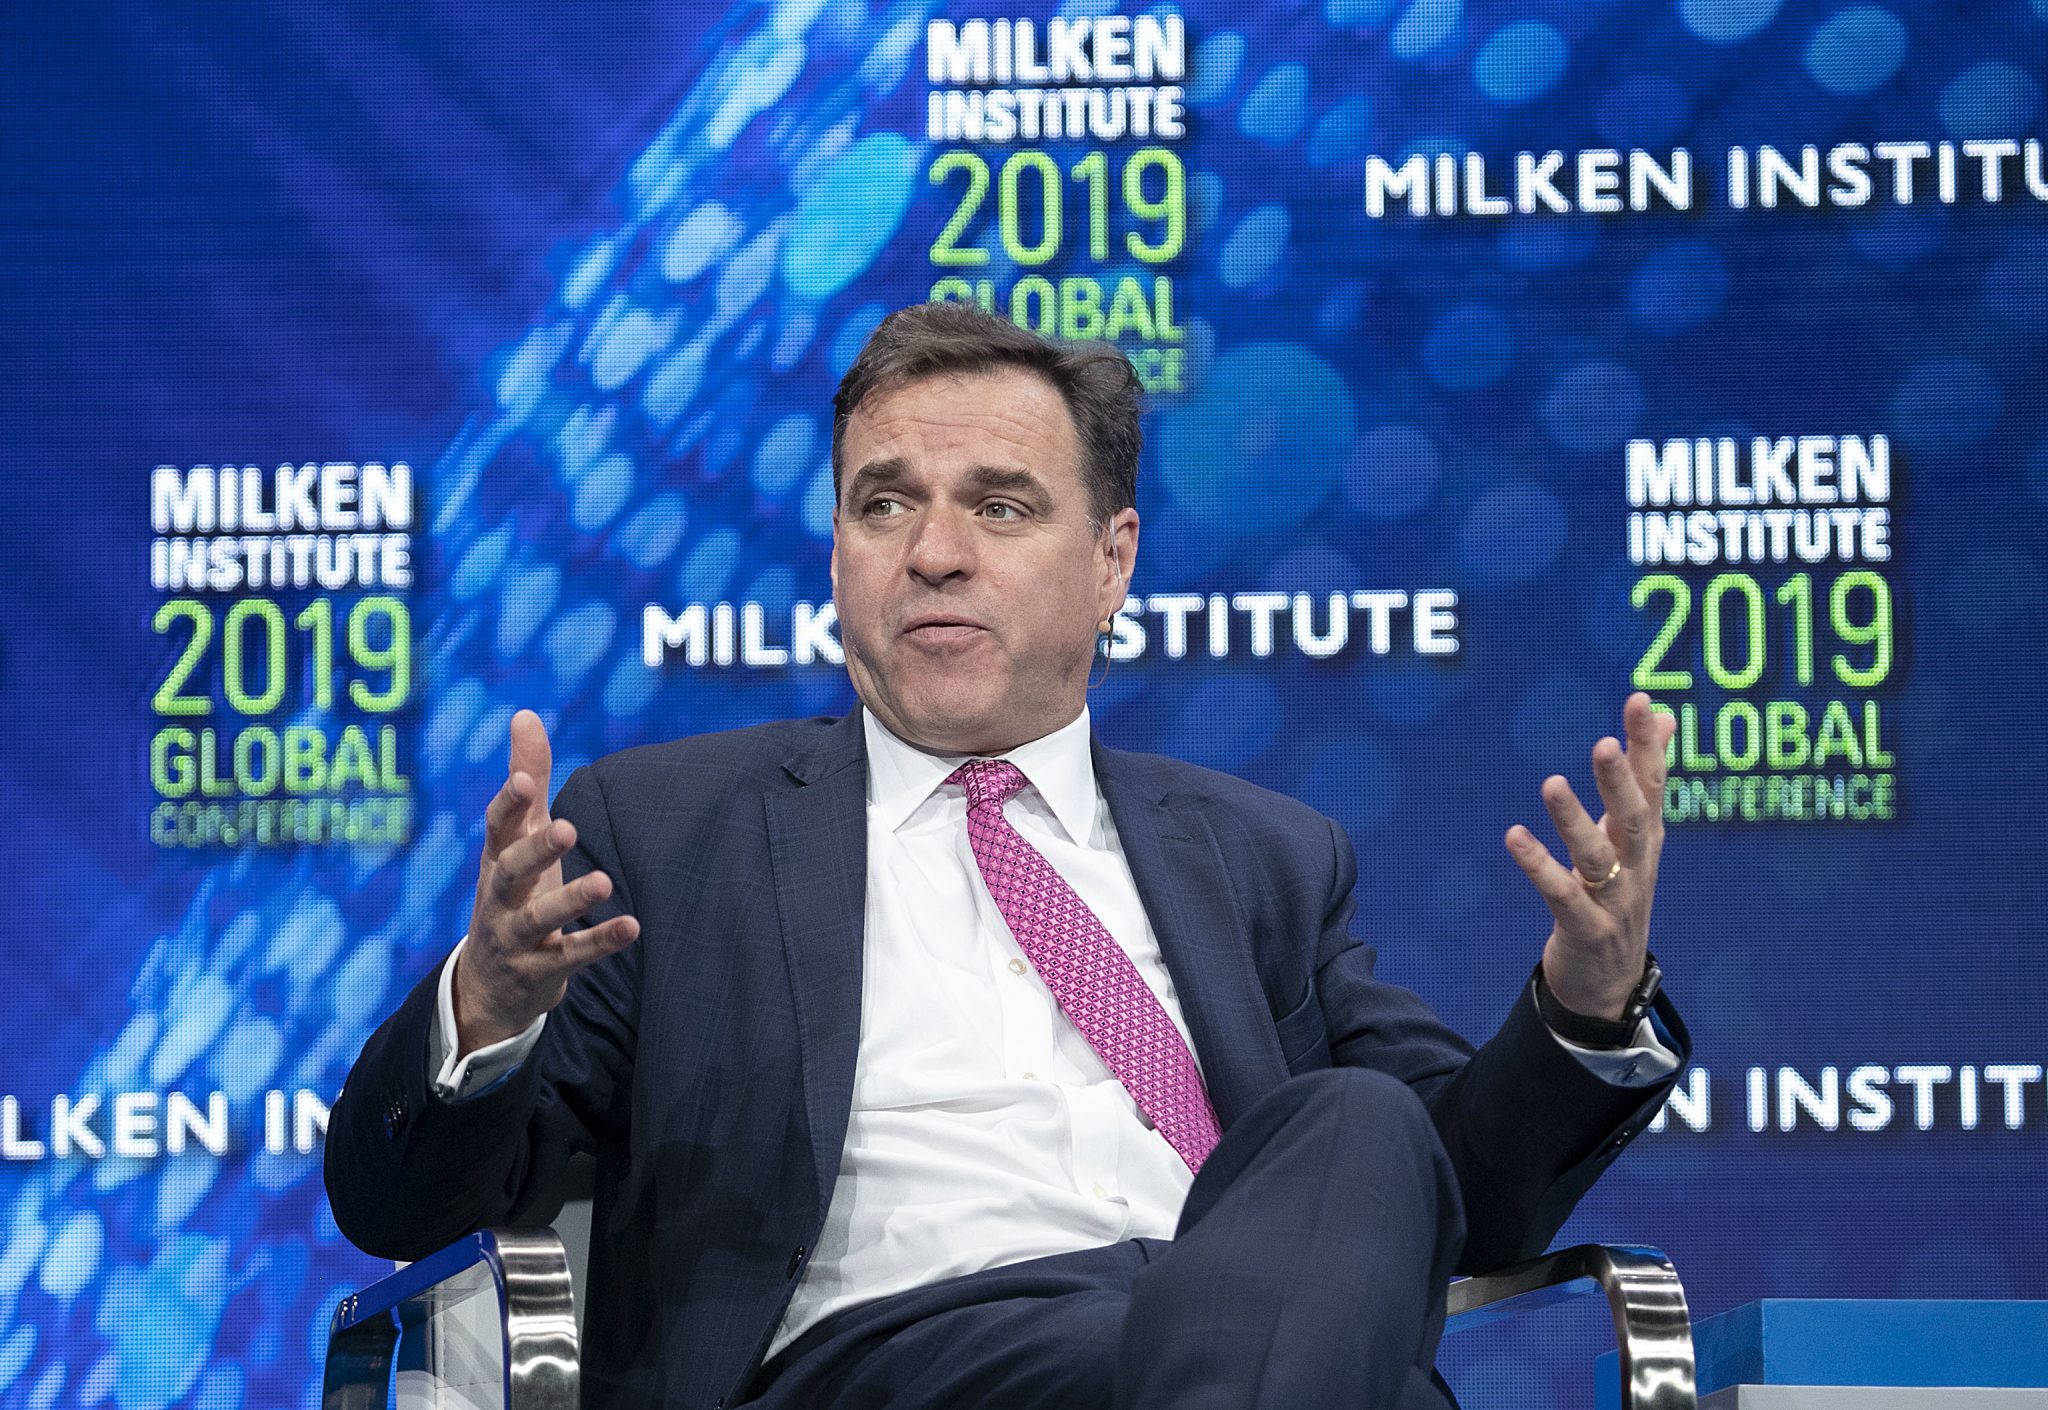 Milken Global Conference 2019